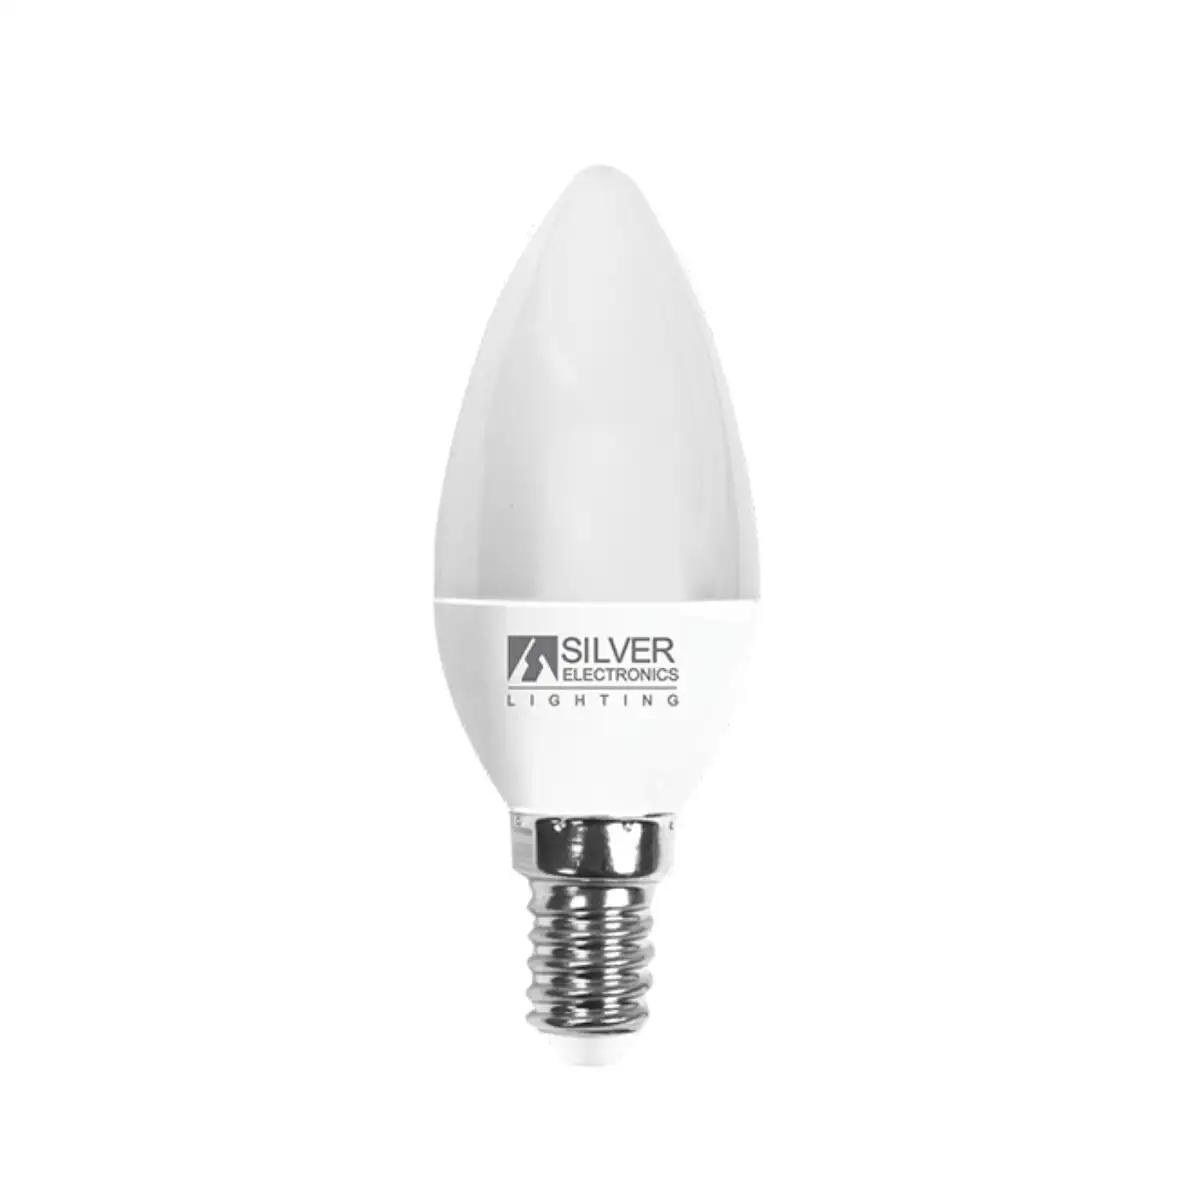 Ampoule led bougie silver electronics lumiere blanche 6 w 5000 k_7714. DIAYTAR SENEGAL - L'Art de Choisir, l'Art de S'émerveiller. Explorez notre gamme de produits et laissez-vous émerveiller par des créations authentiques et des designs modernes.